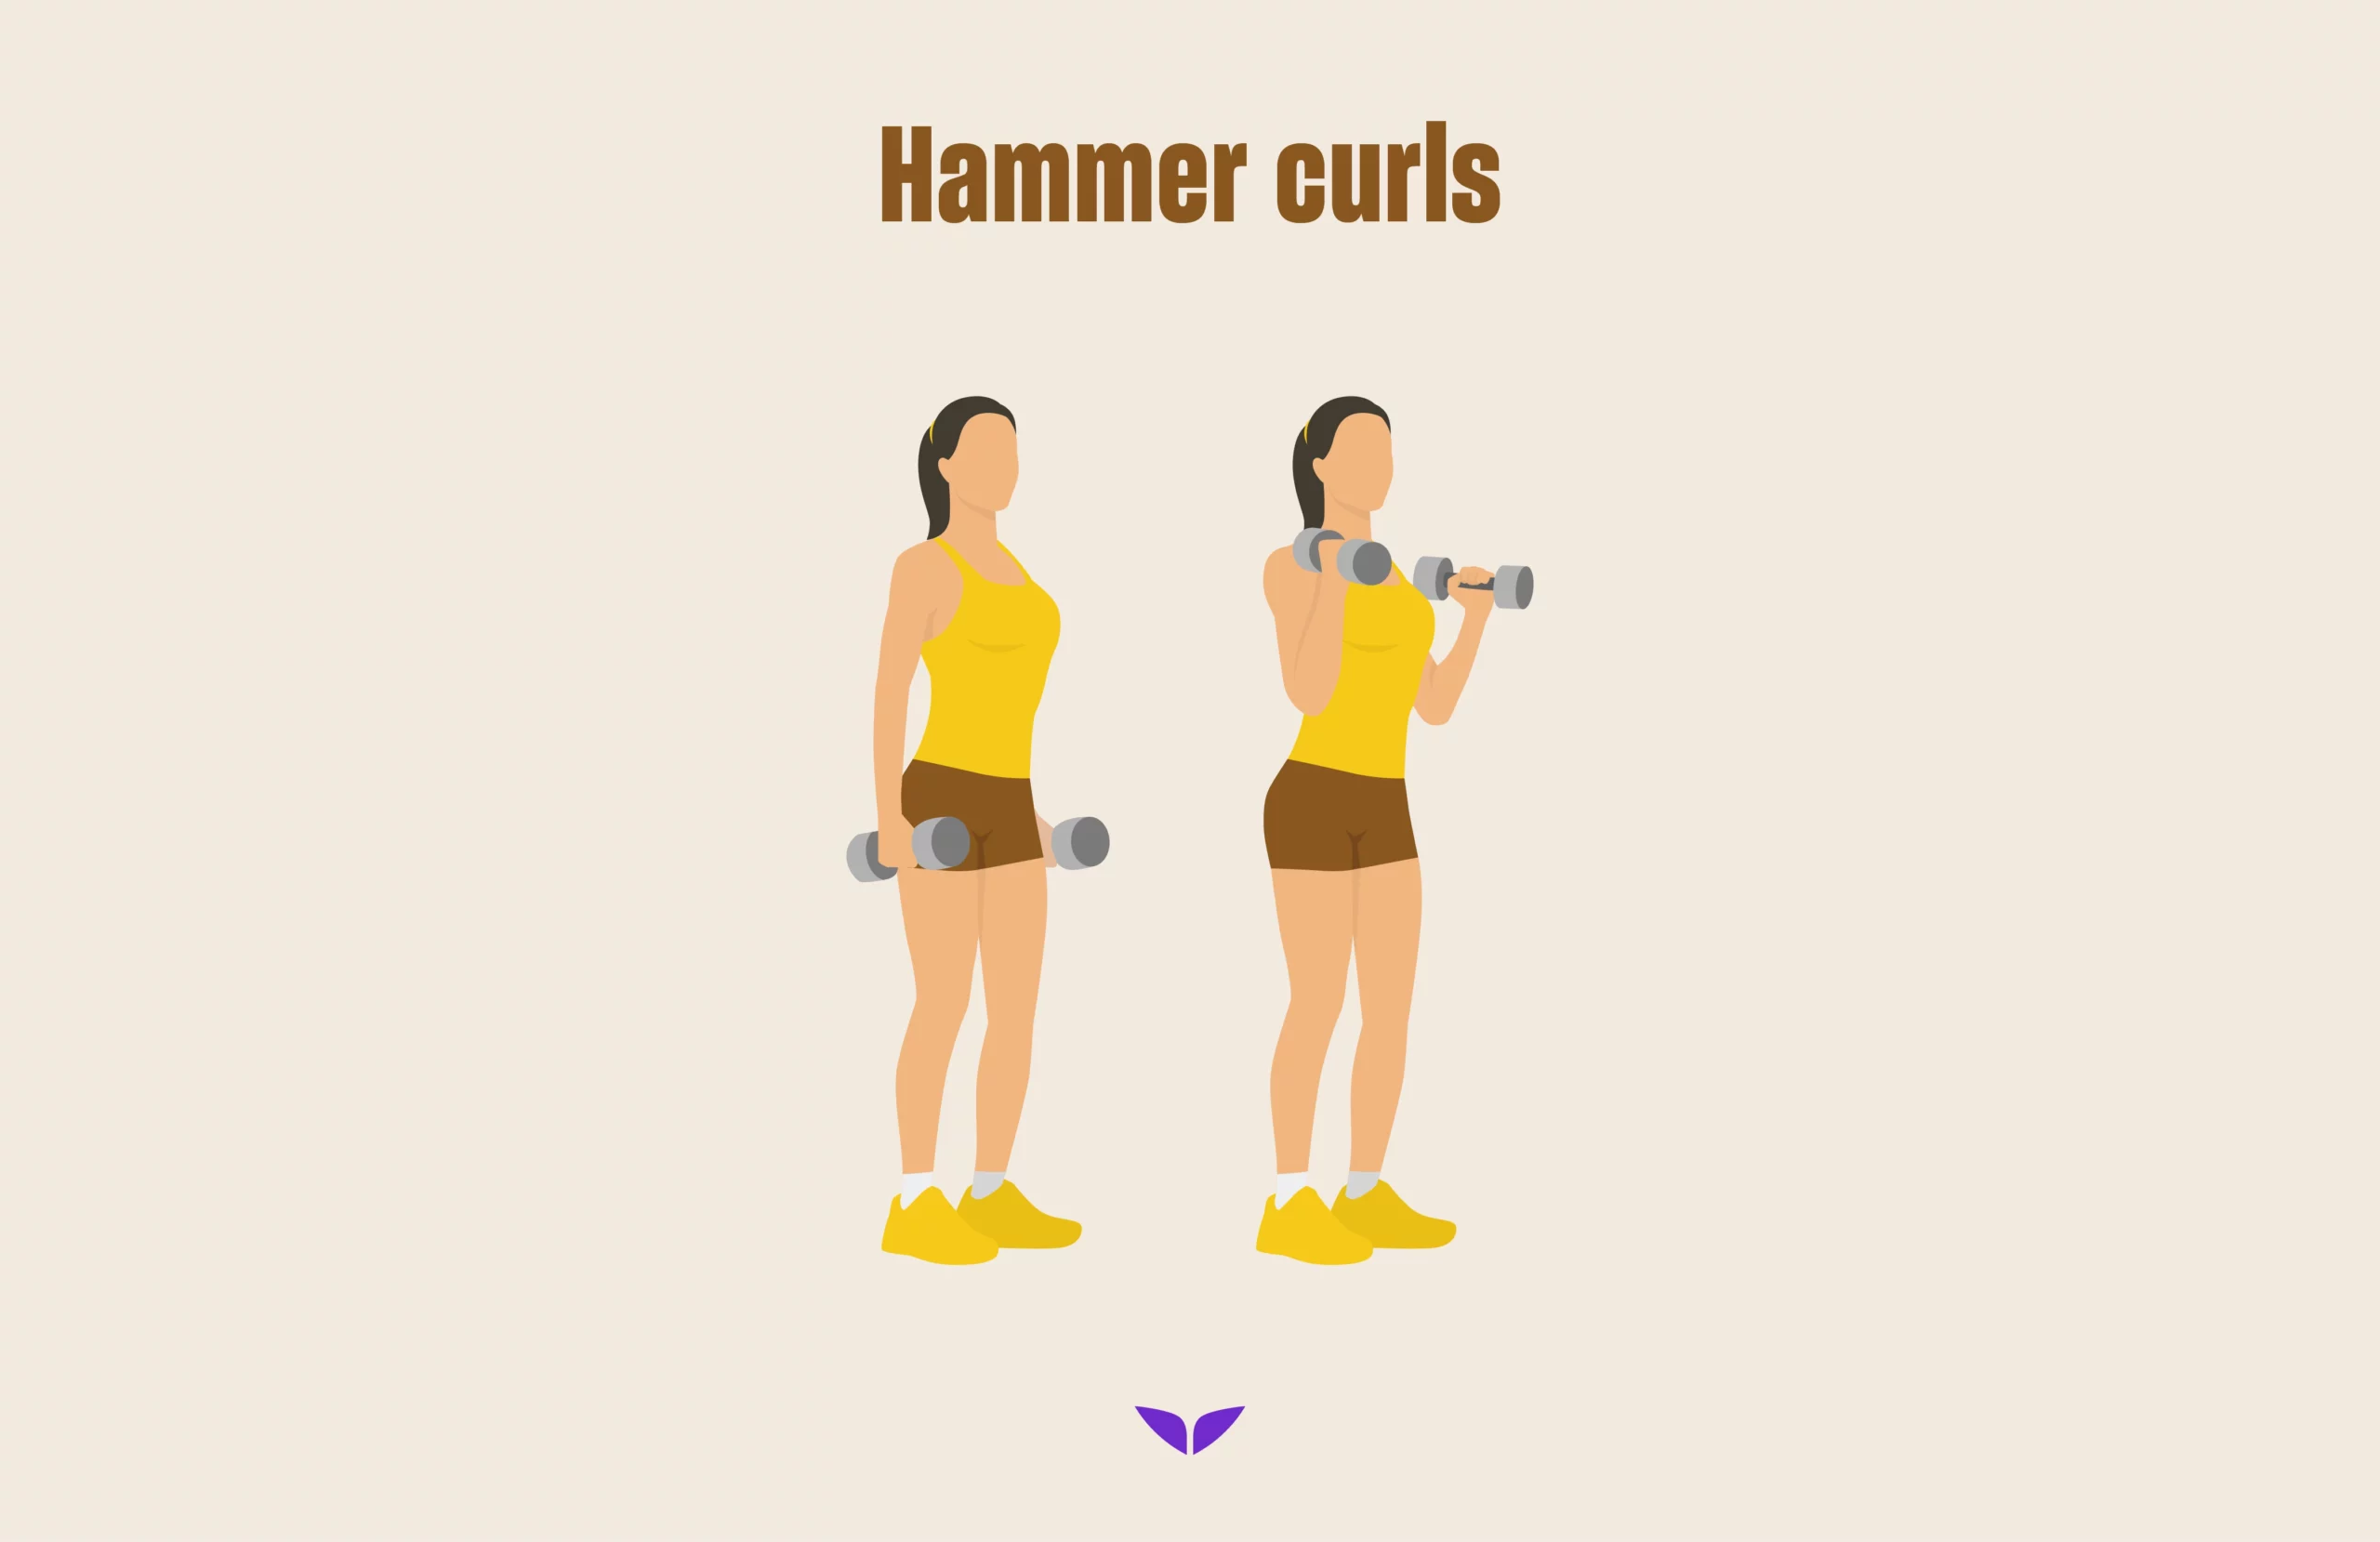 Hammer curls